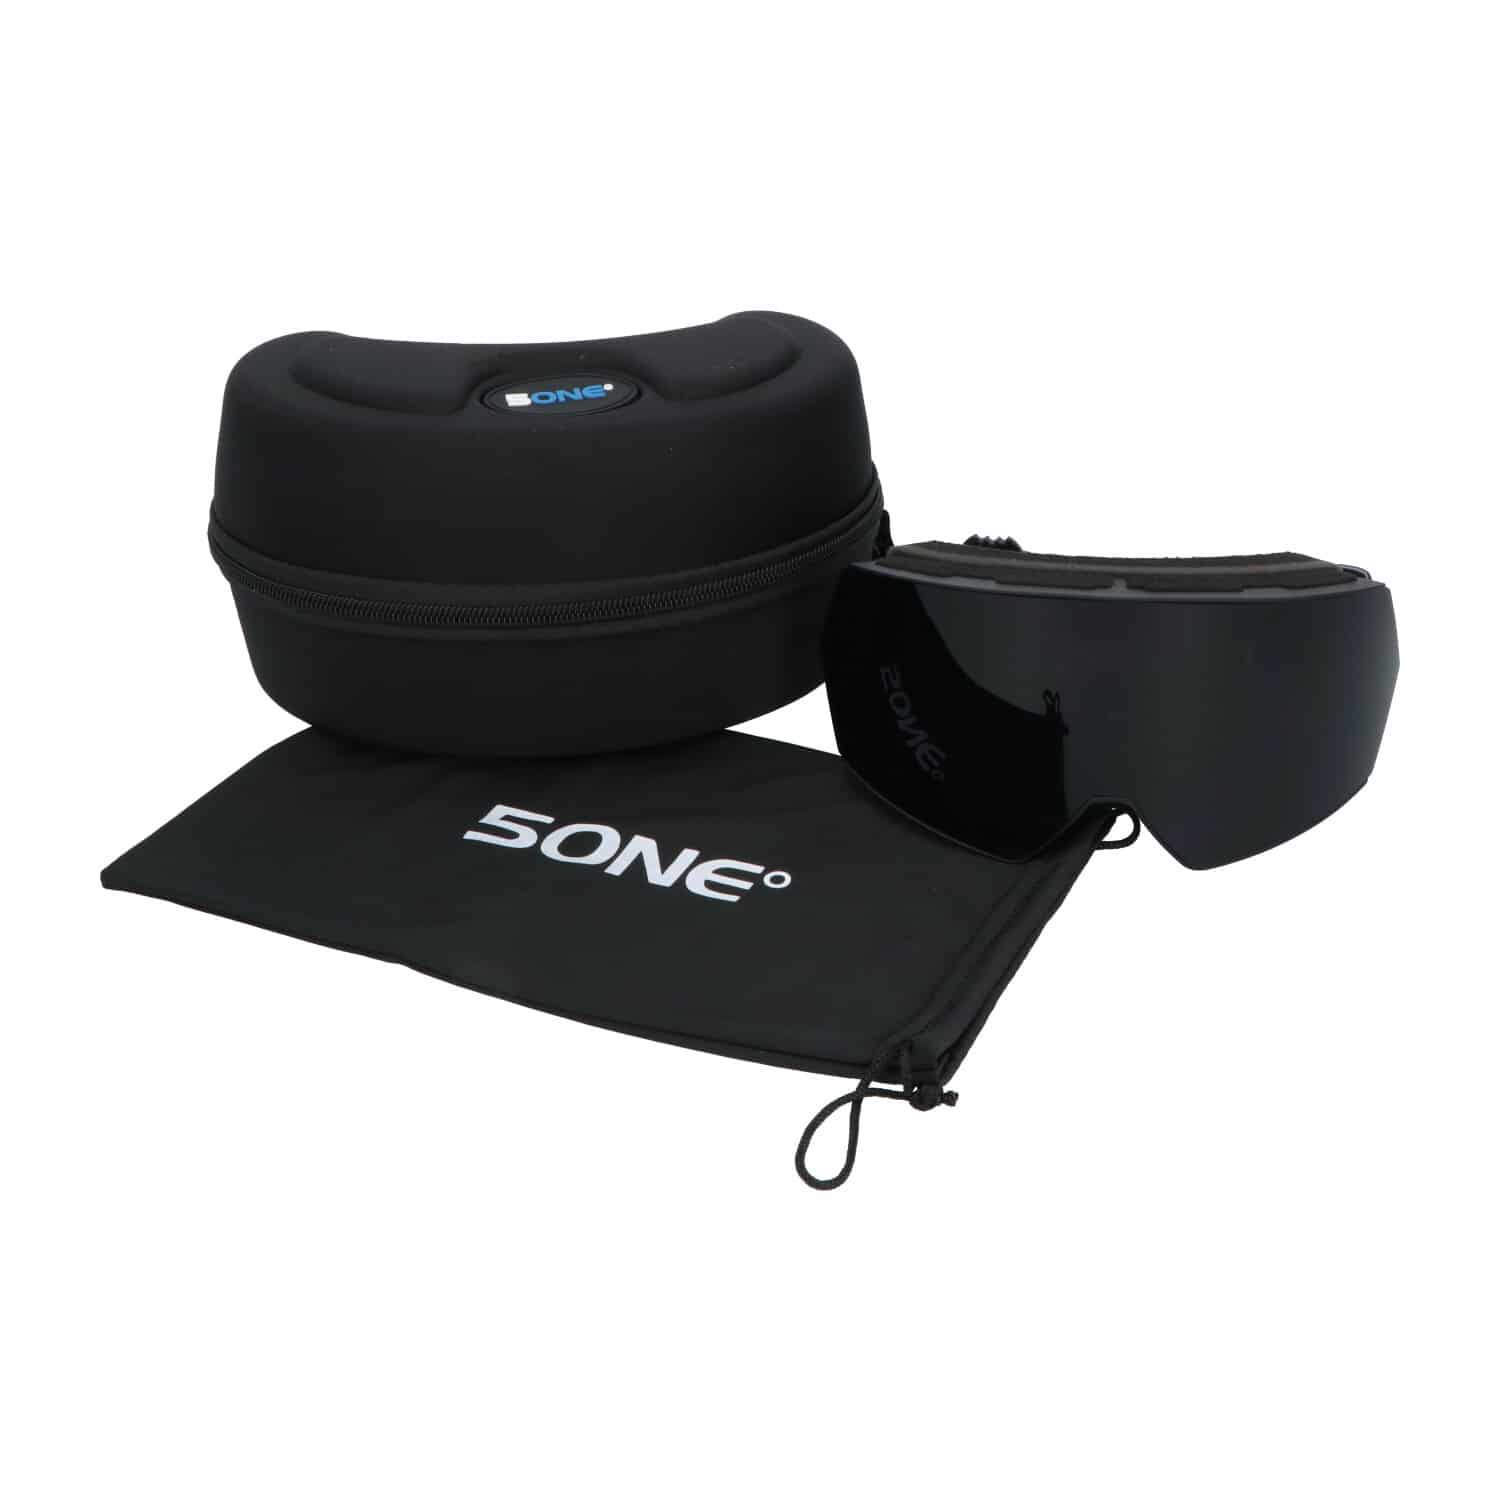 5one® Skibril Alpine 6 Black - Skibril voor Tieners met 2 Lenzen